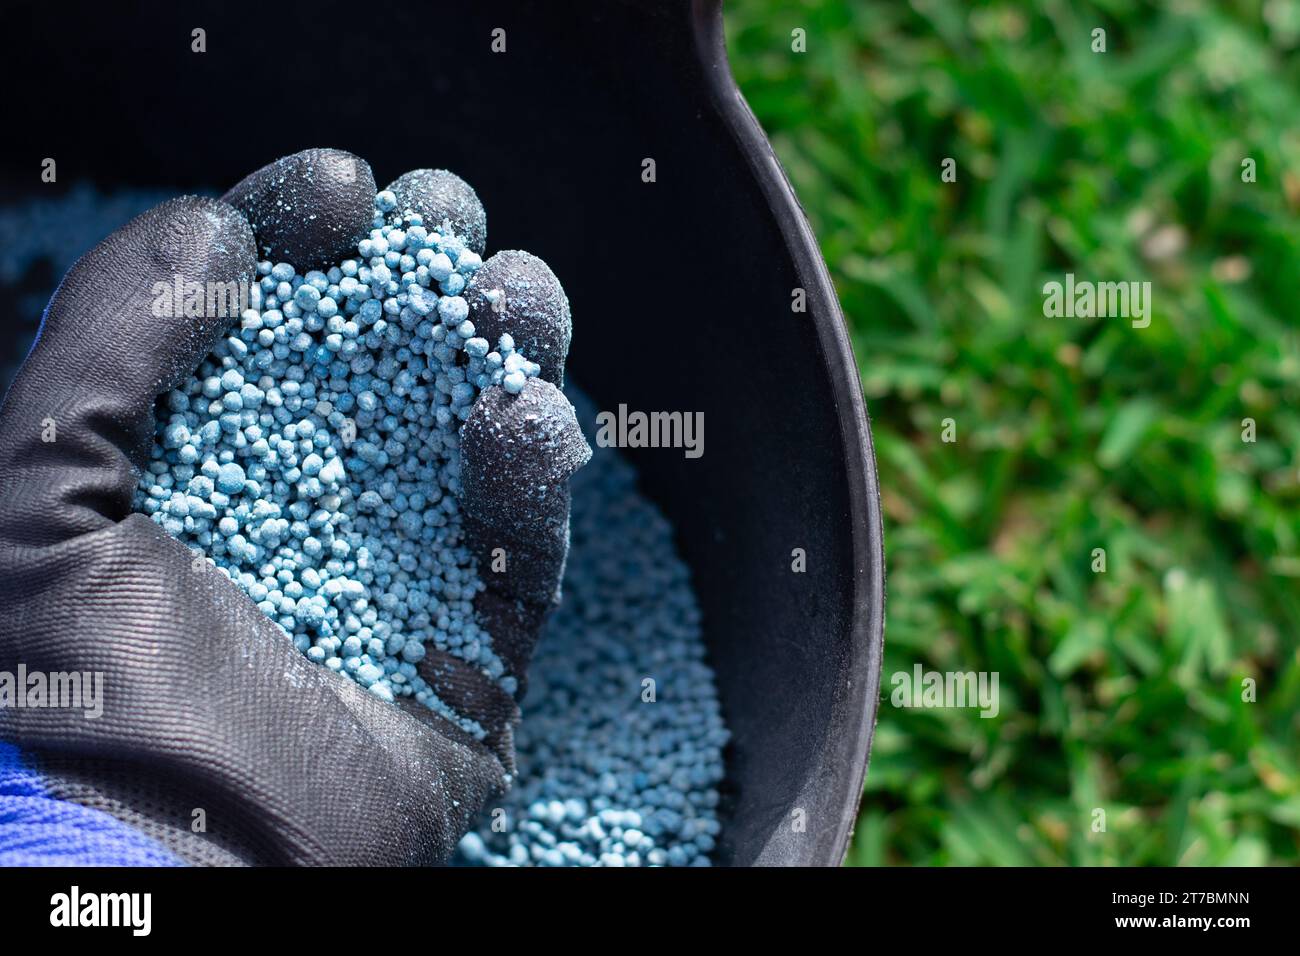 Seau d'engrais chimique bleu en format granulaire prêt à être appliqué sur les plantes de jardin. Concept d'entretien de jardin. Banque D'Images